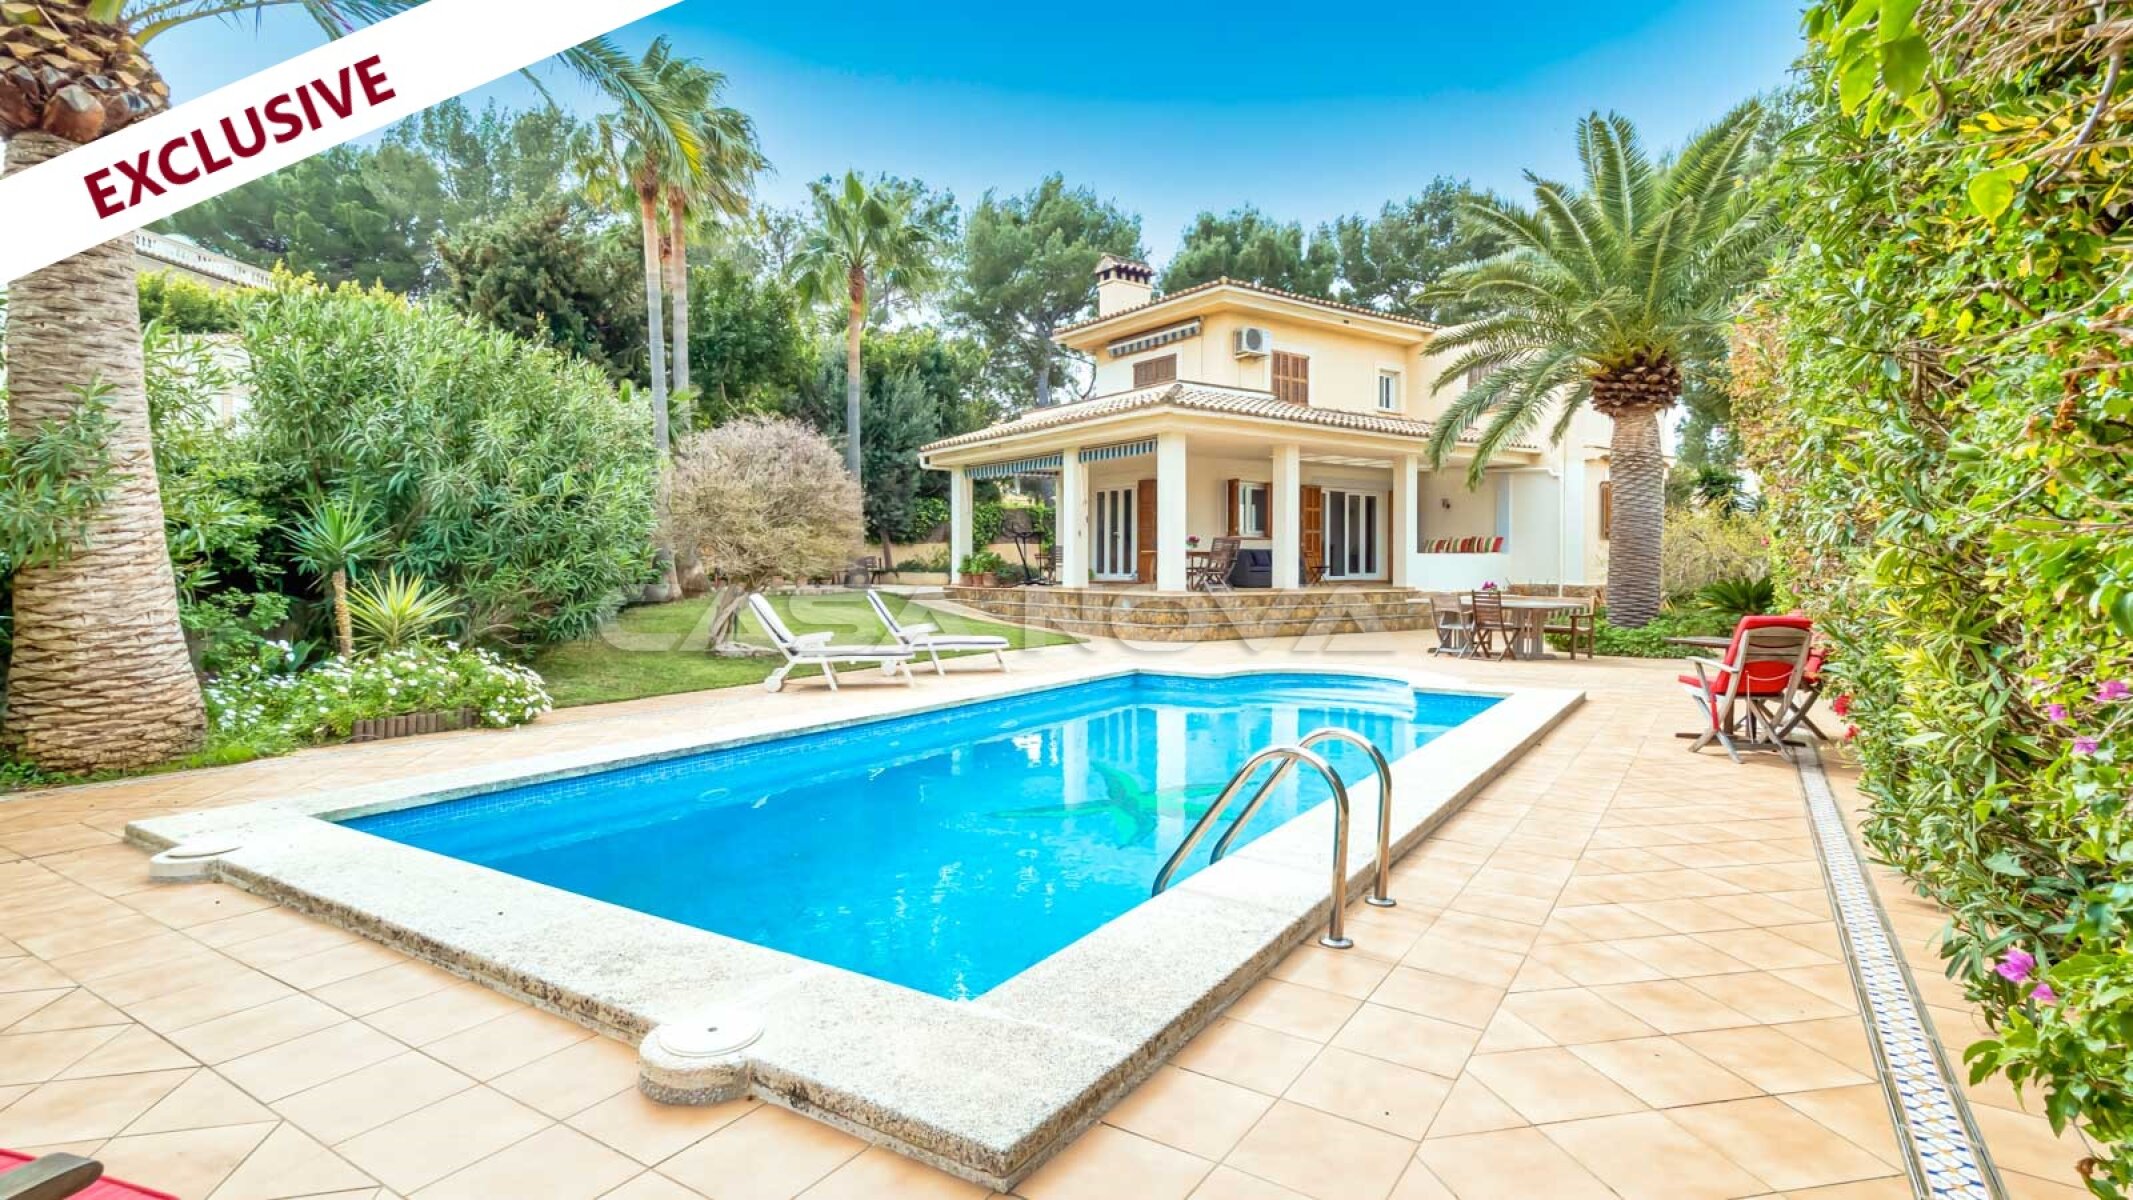 EXCLUSIVO: Villa mediterr�nea con piscina en top ubicaci�n